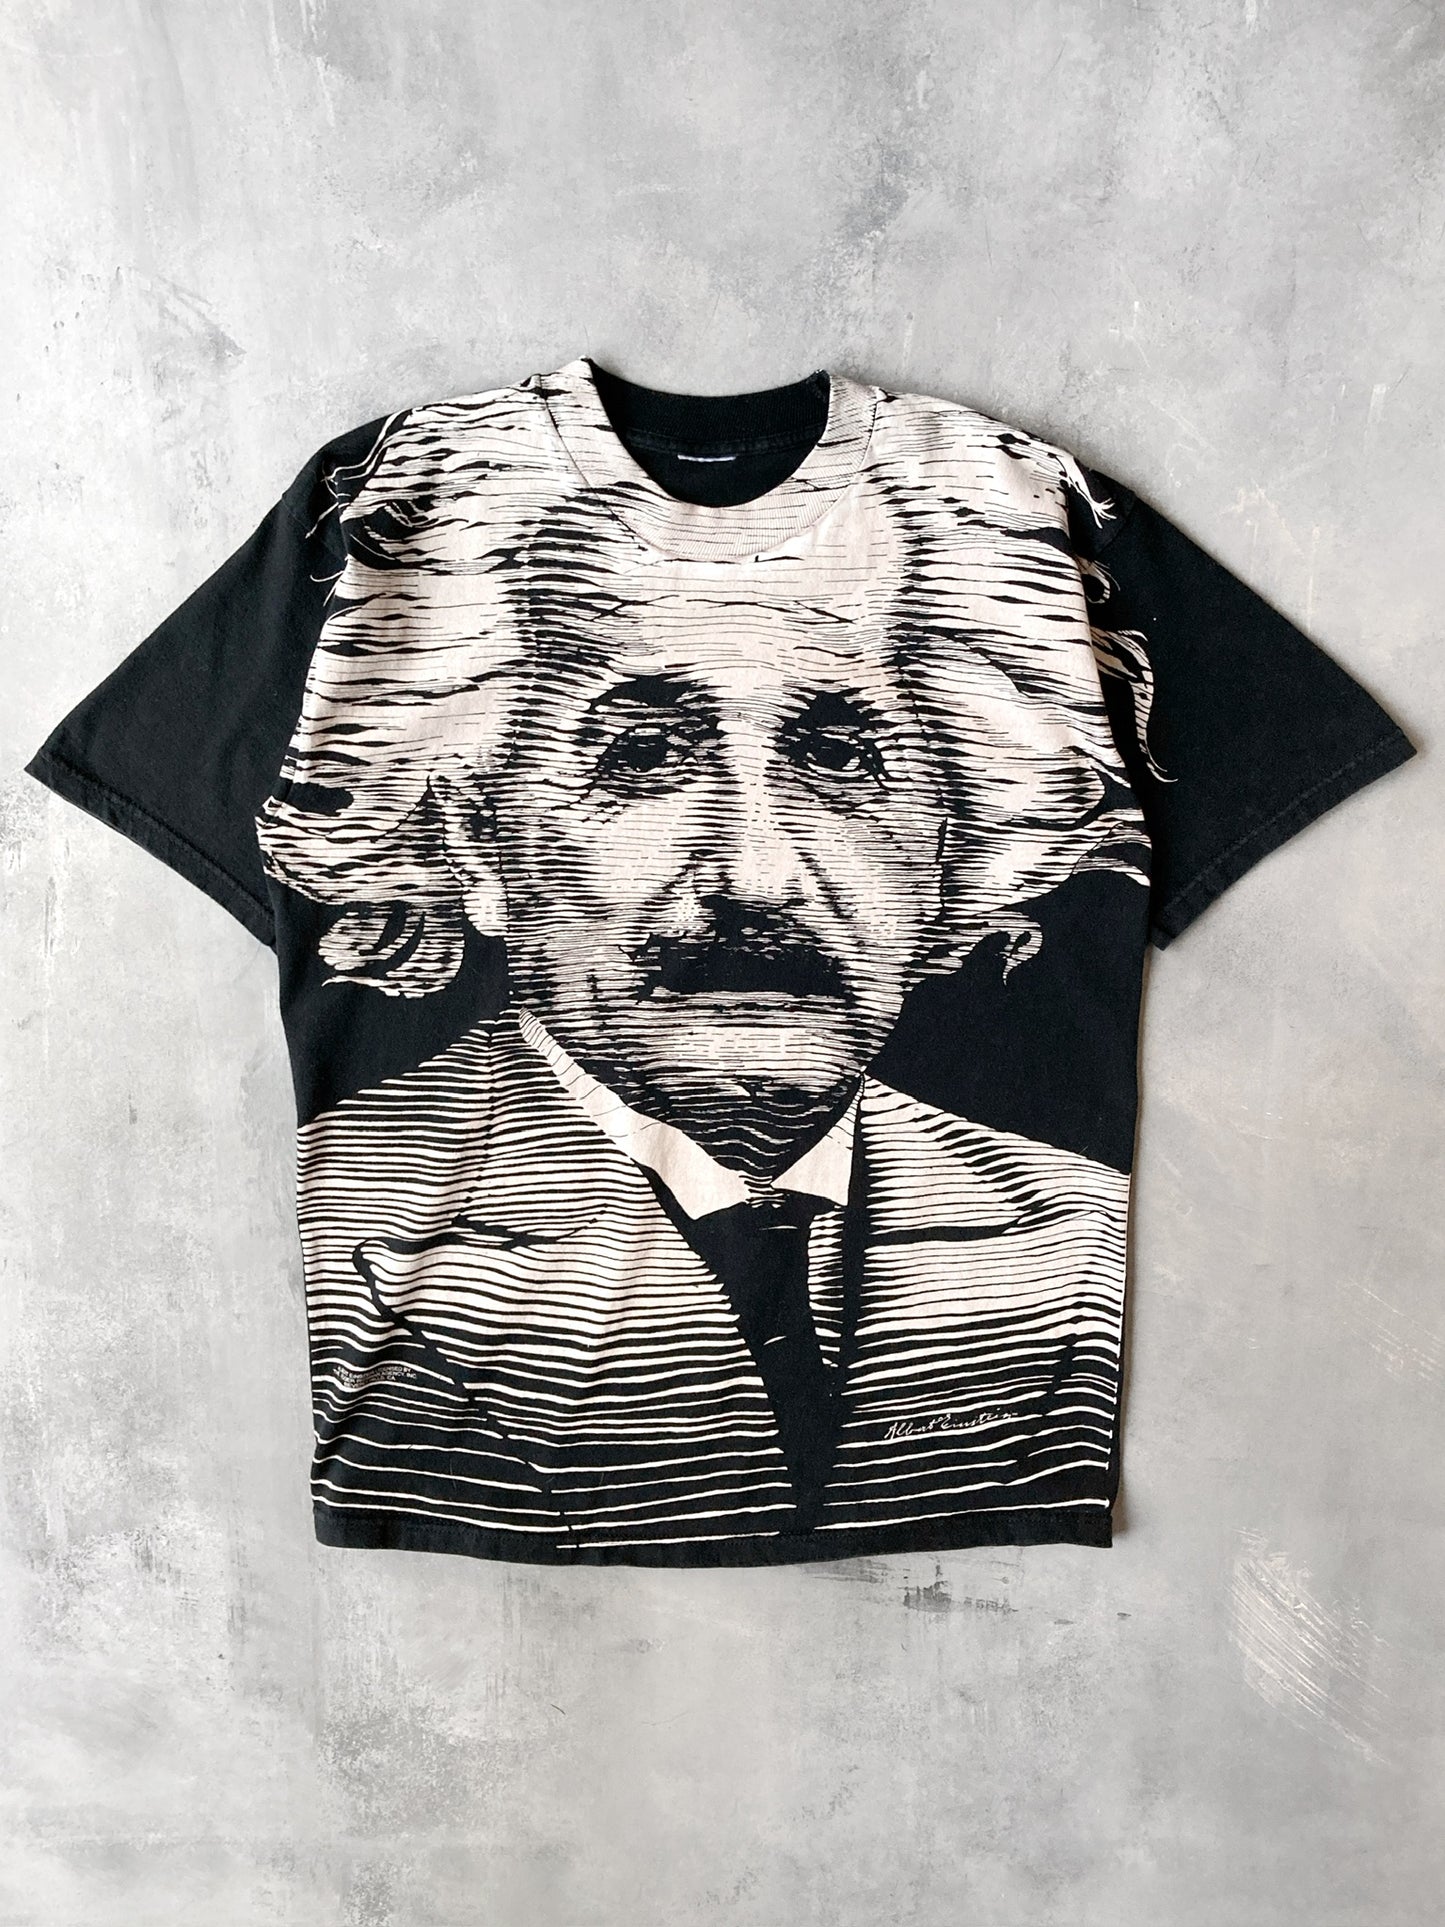 Albert Einstein T-Shirt 90's - Large